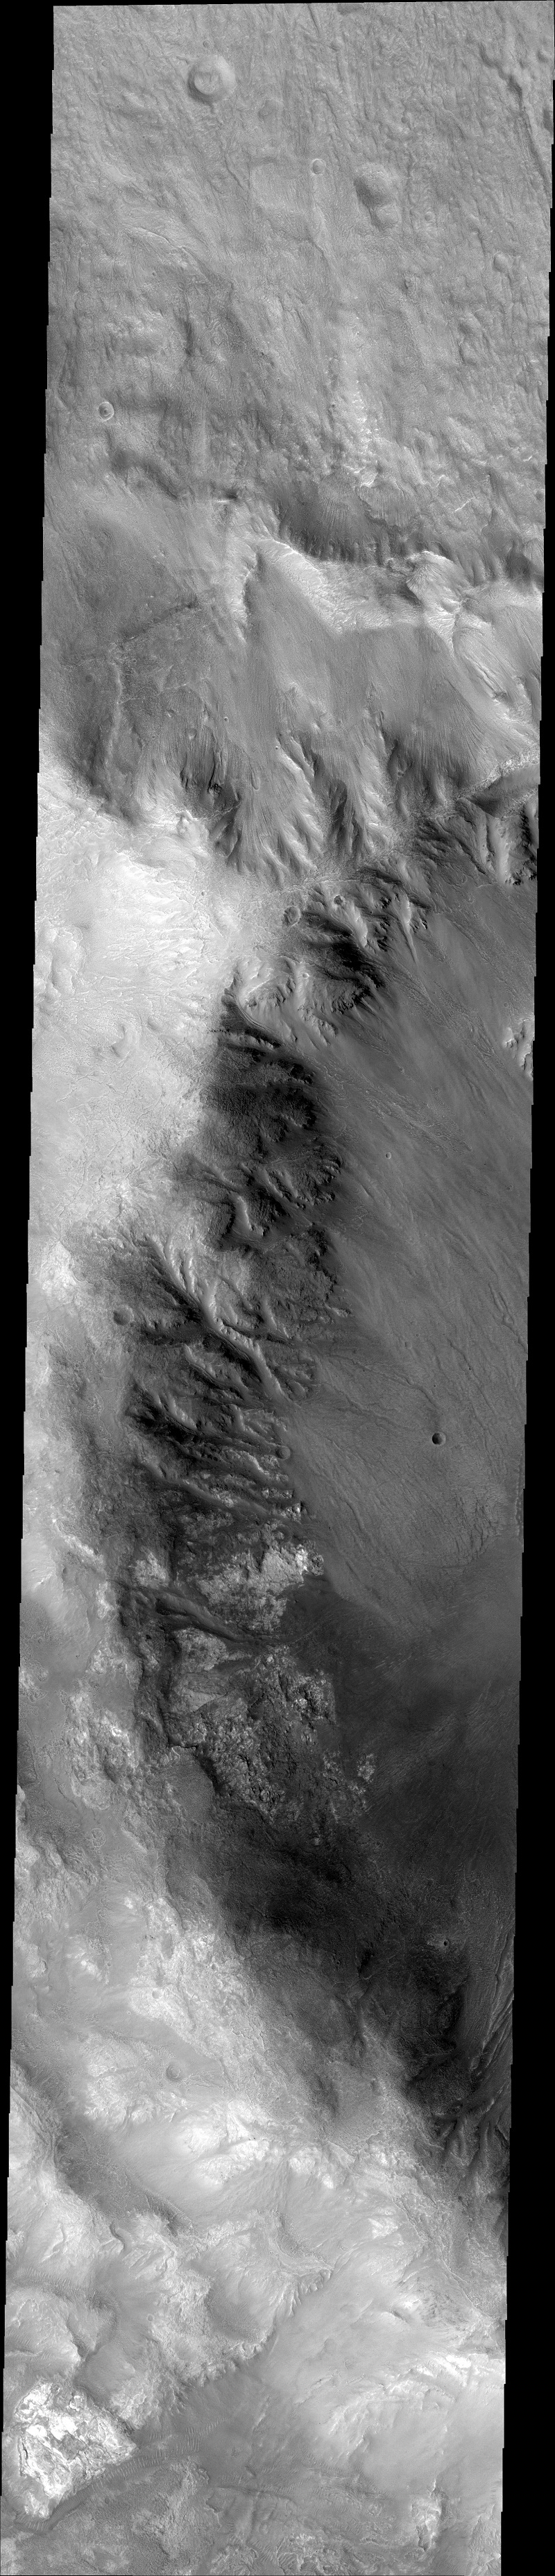 Marte cassis